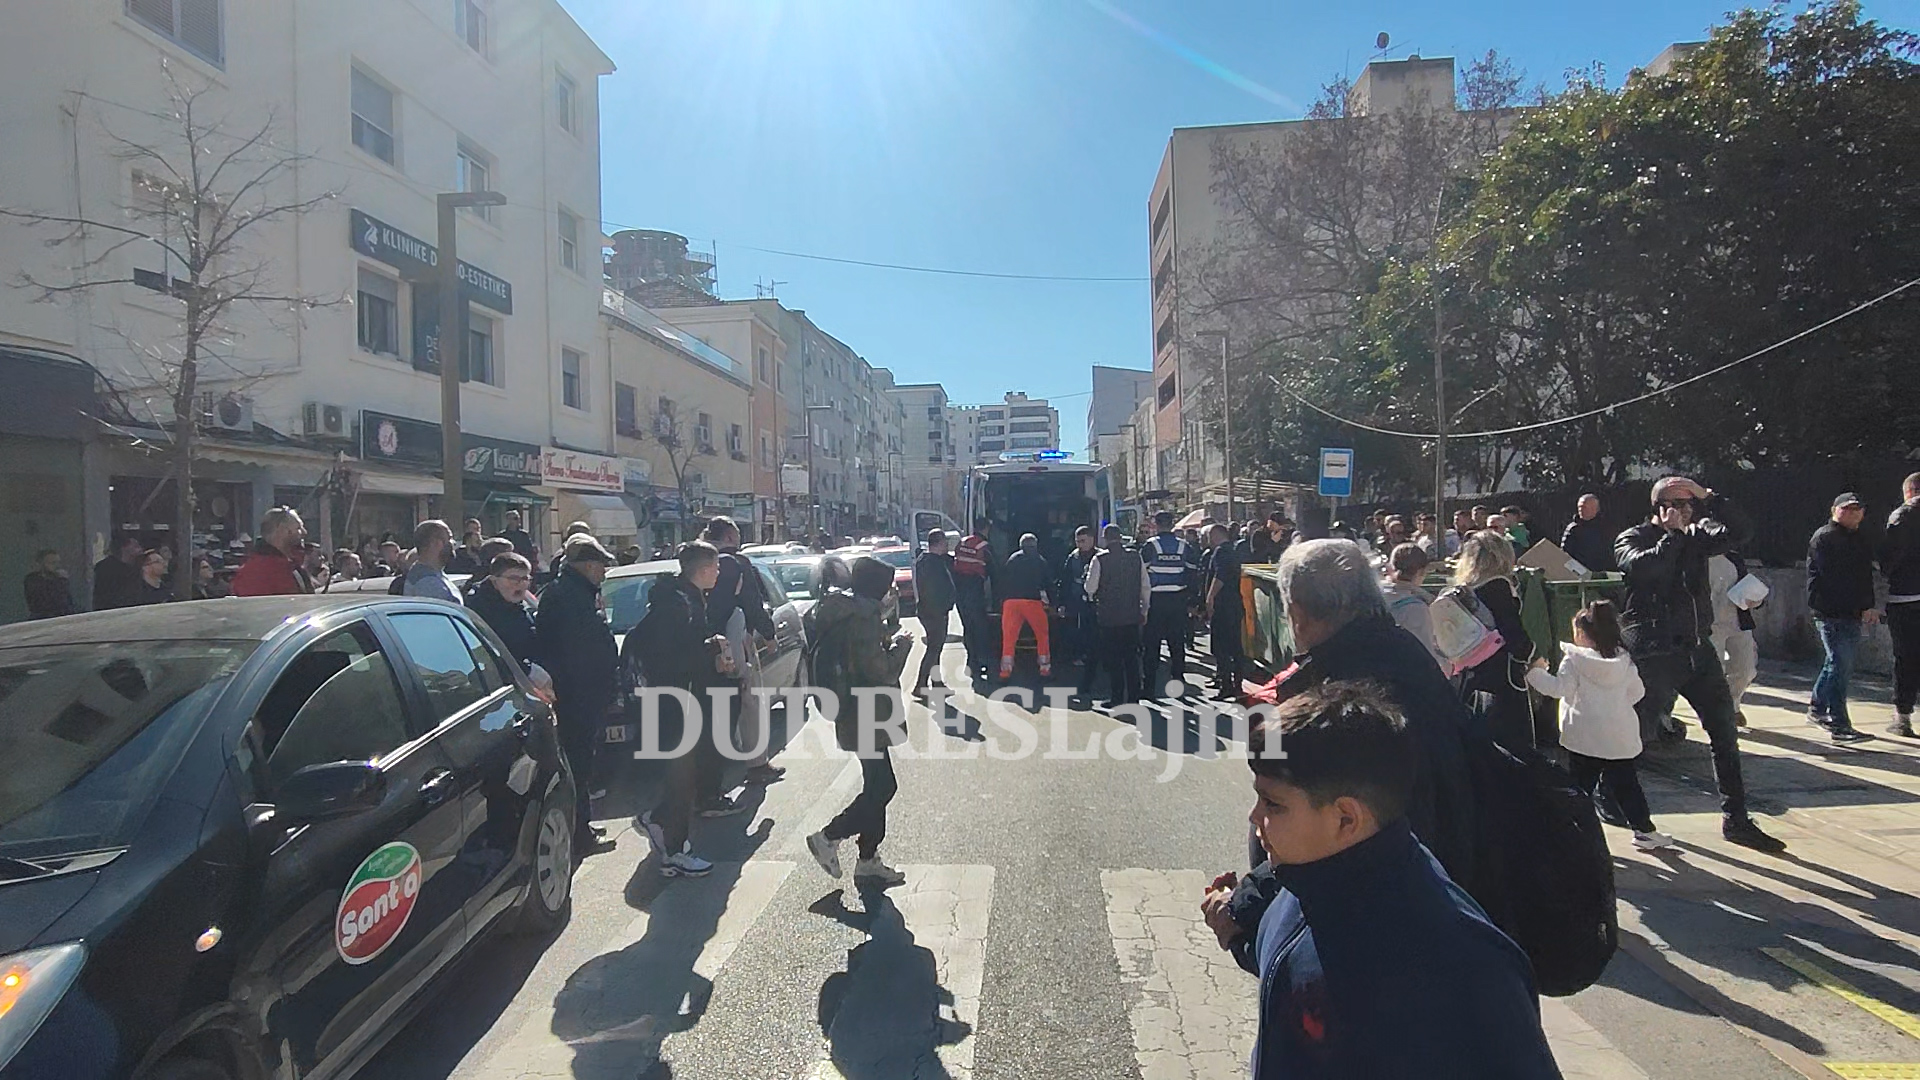 Ngjarje e rëndë në Durrës, dyshohet se një i ri ka humbur jetën, i goditur me thikë  (VIDEO)